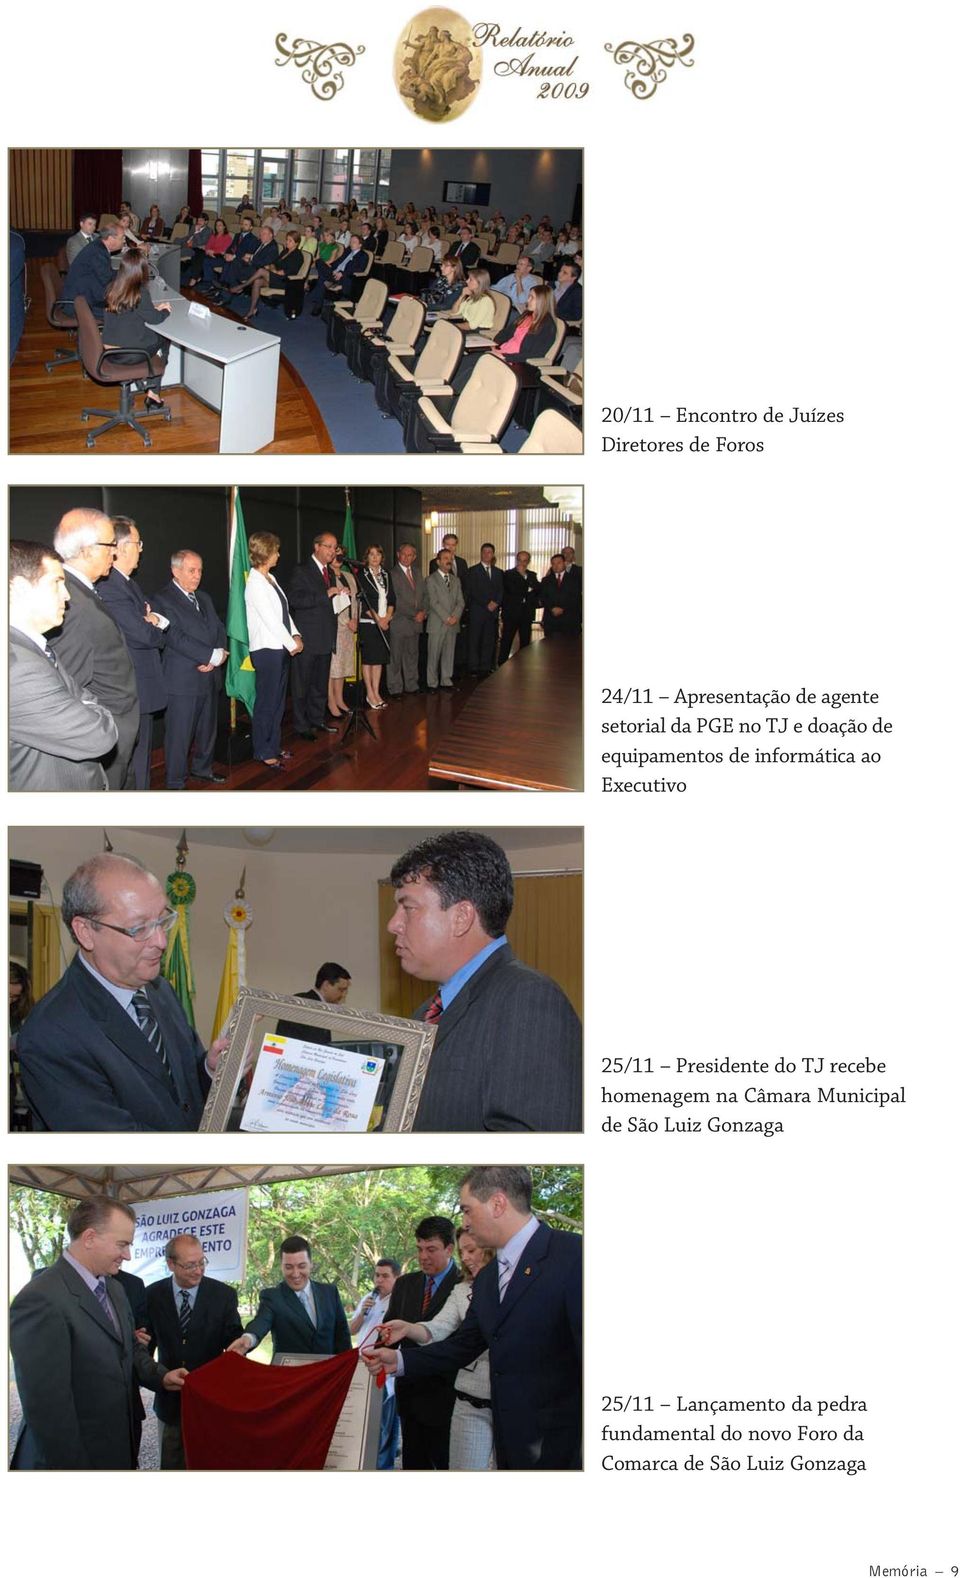 25/11 Presidente do TJ recebe homenagem na Câmara Municipal de São Luiz Gonzaga